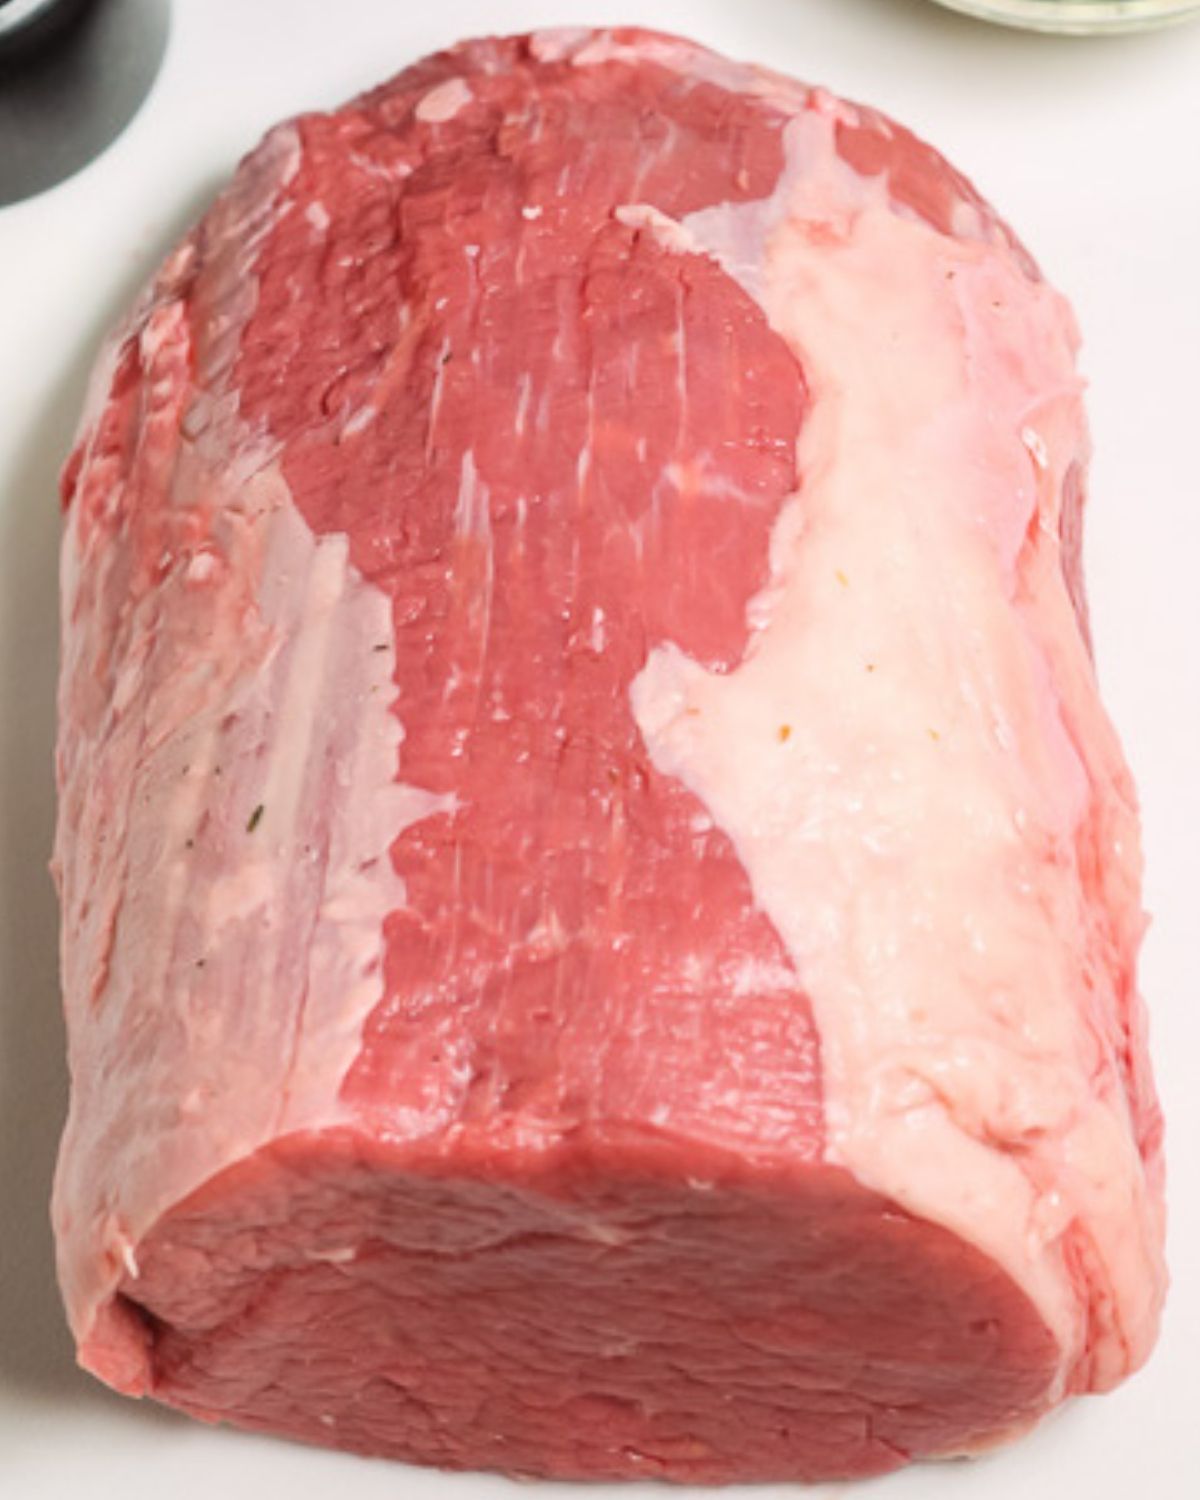 Raw beef roast on a cutting board